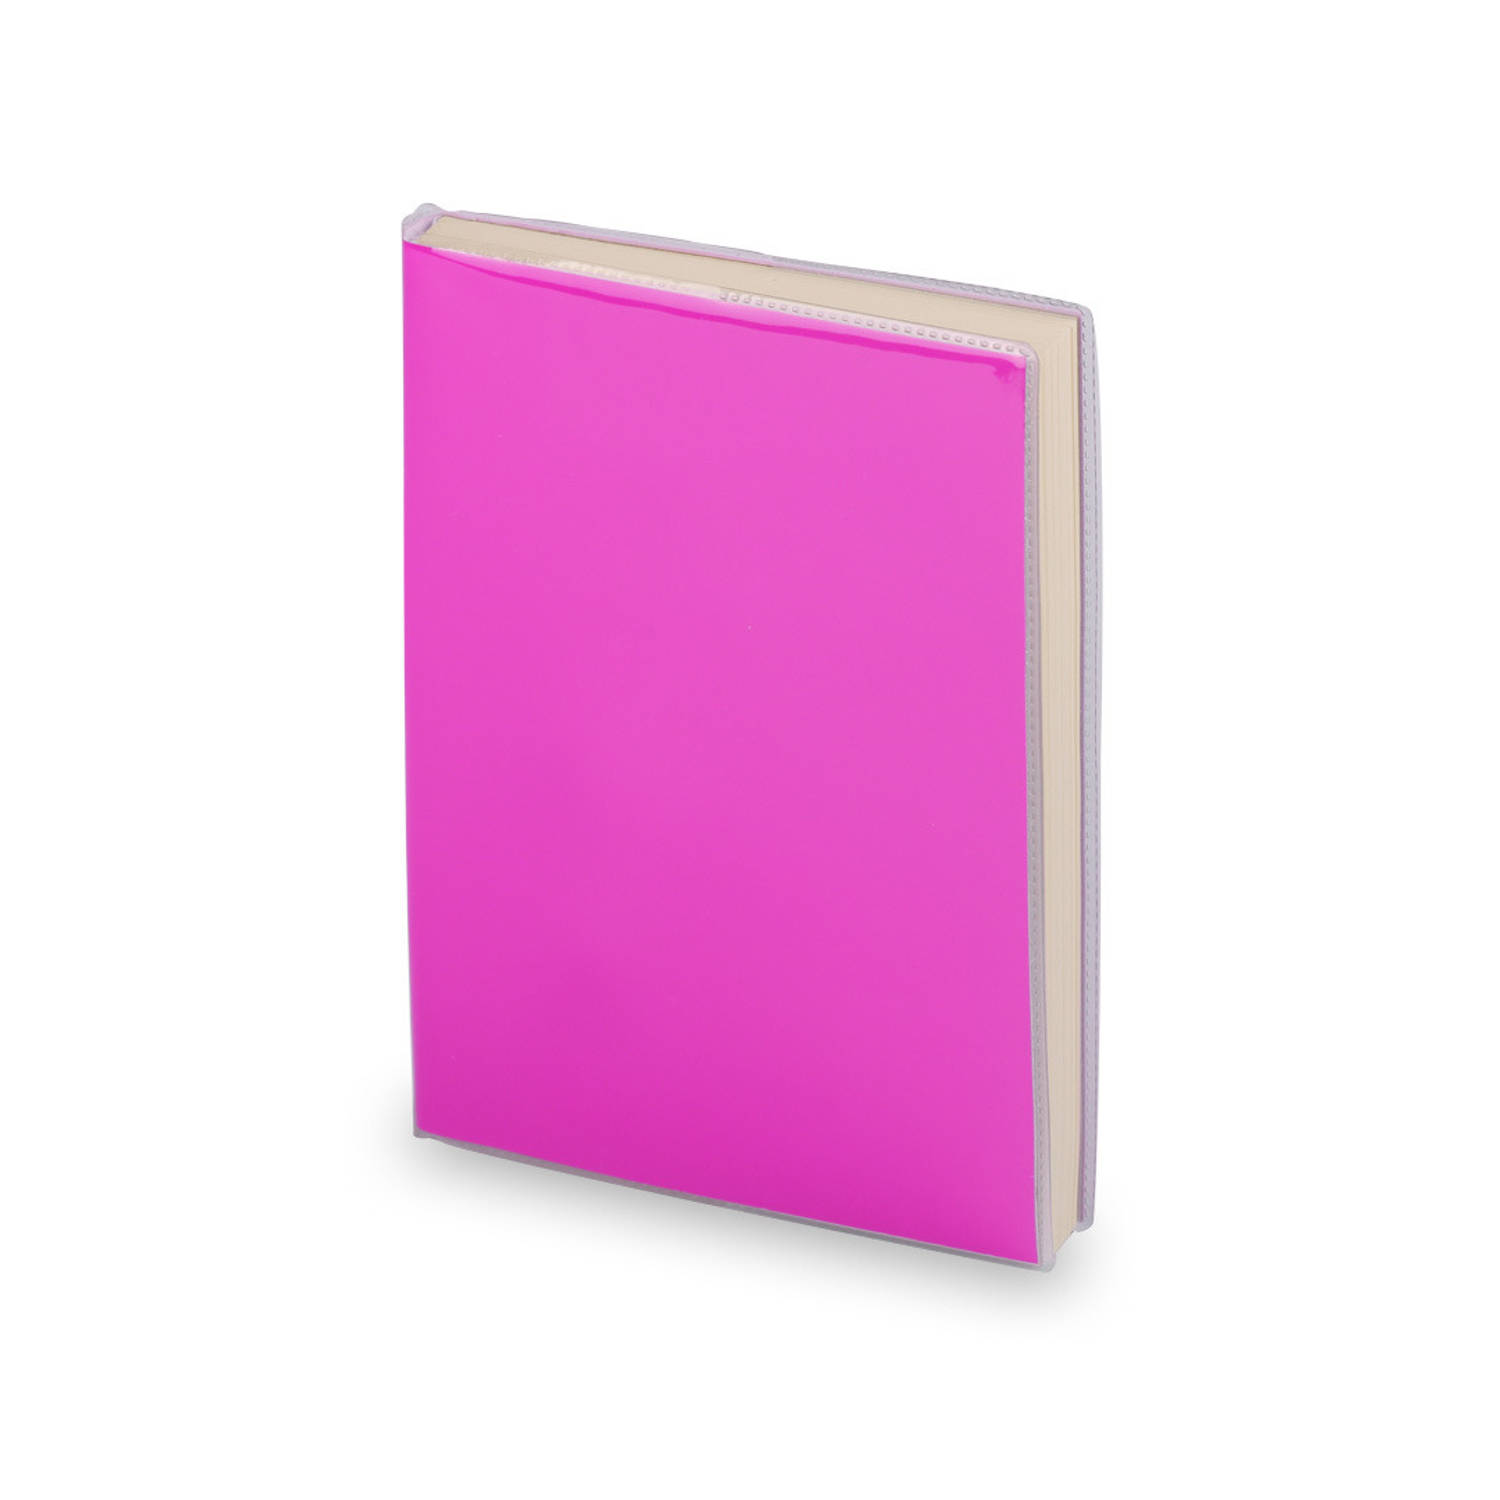 Notitieblokje zachte kaft roze met plastic hoes 10 x 13 cm Notitieboek